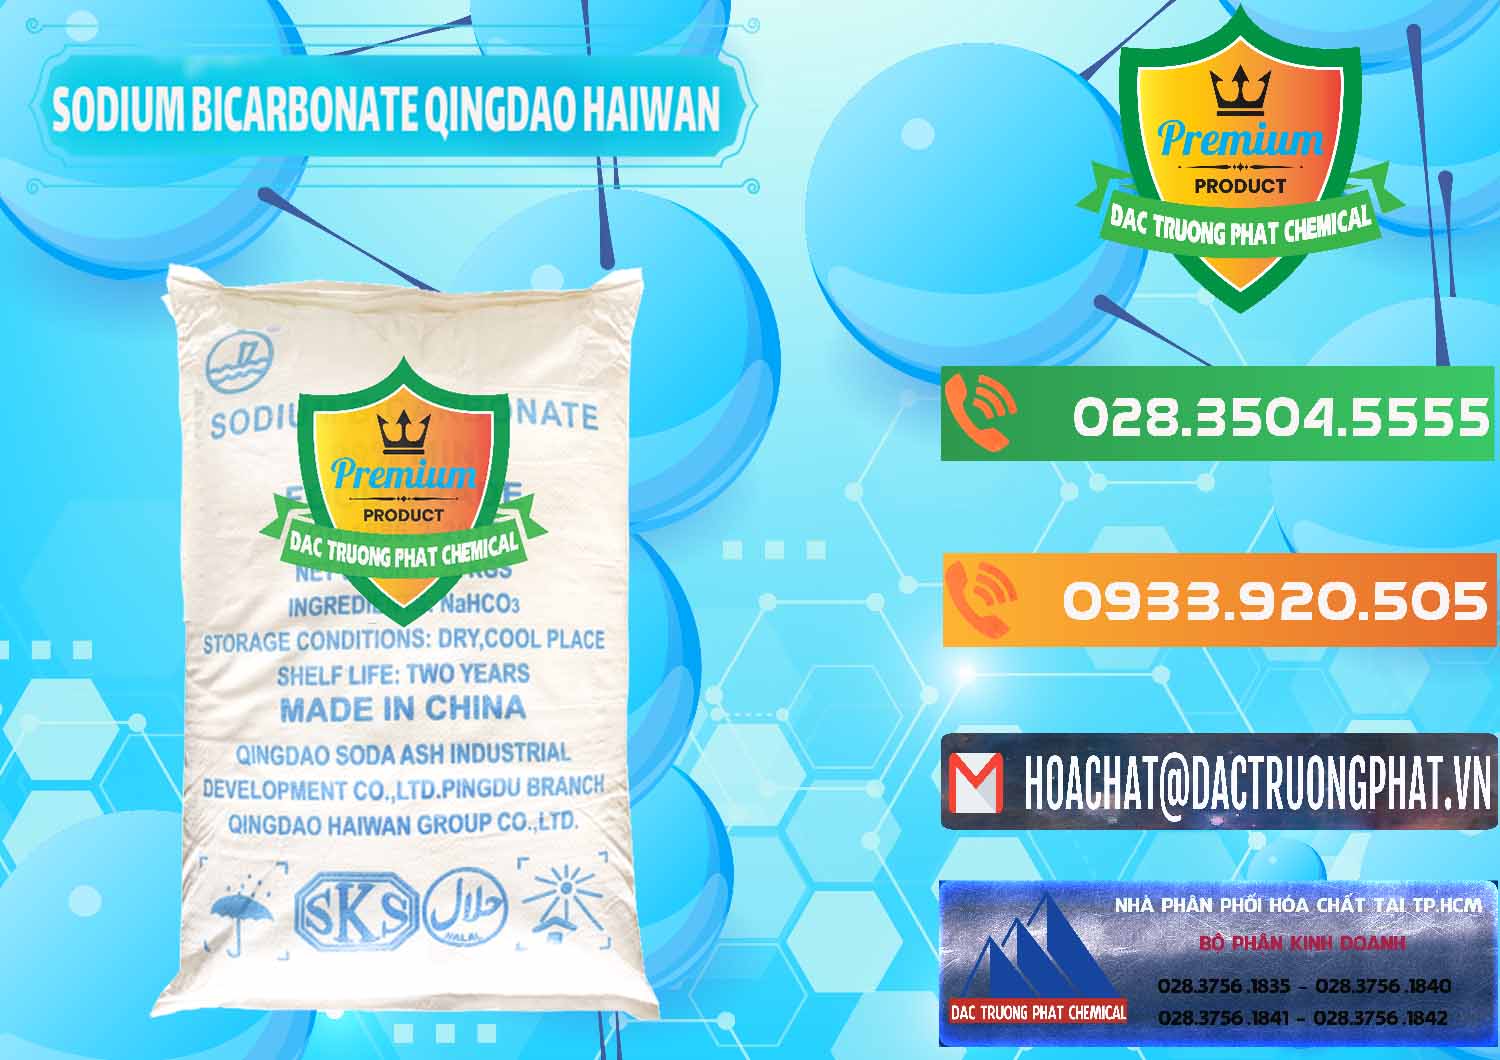 Công ty chuyên bán _ phân phối Sodium Bicarbonate – Bicar NaHCO3 Food Grade Qingdao Haiwan Trung Quốc China - 0258 - Phân phối ( cung cấp ) hóa chất tại TP.HCM - hoachatxulynuoc.com.vn